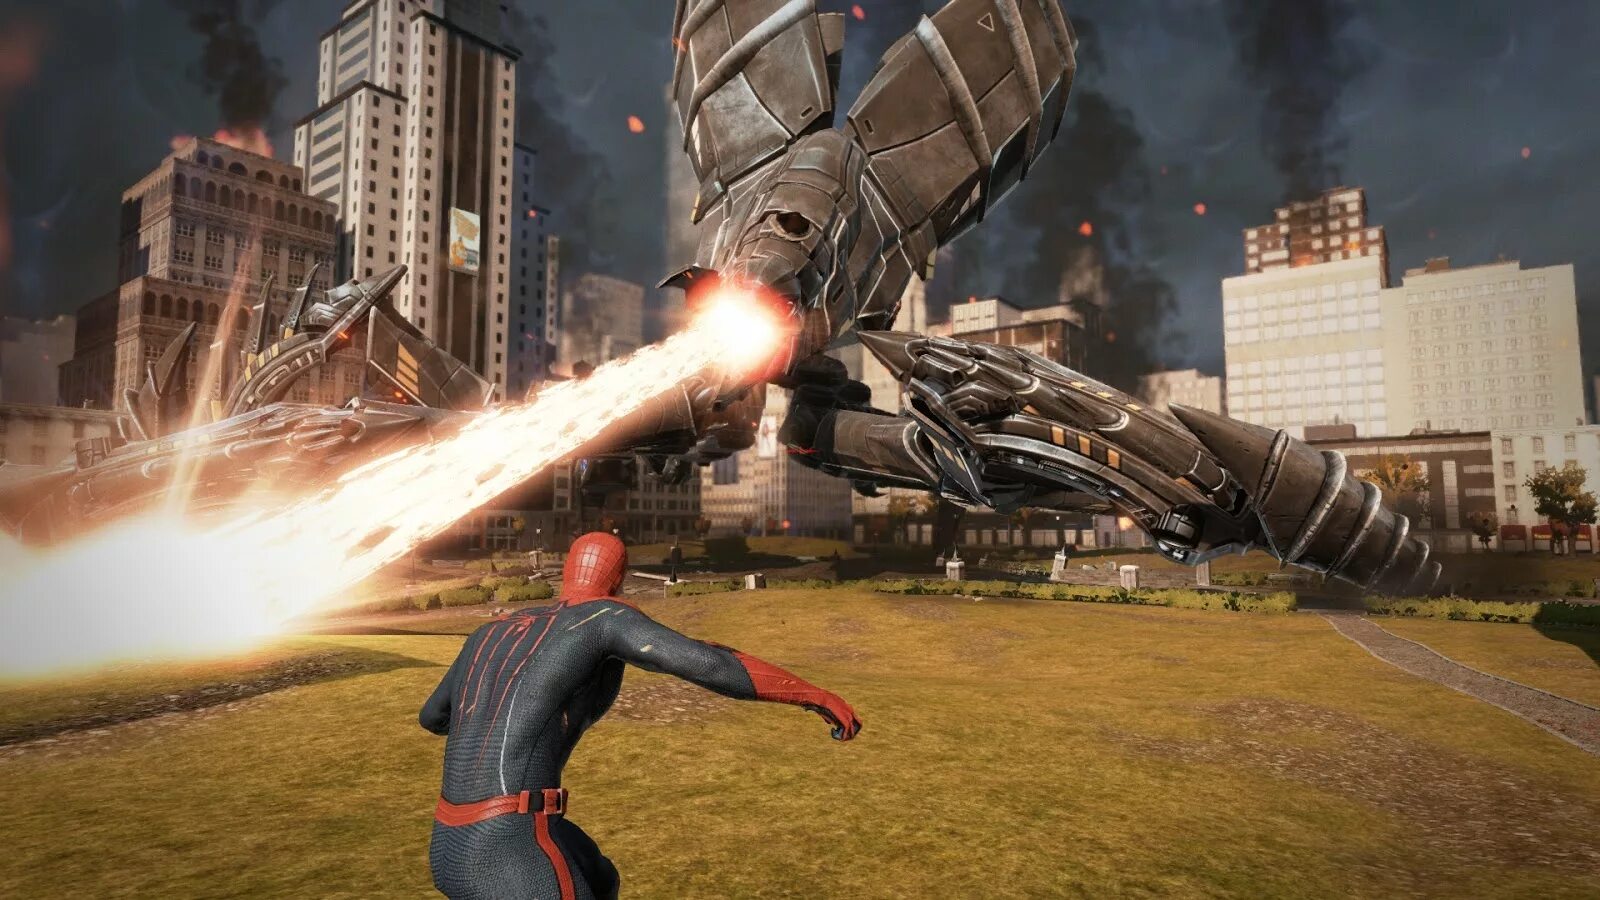 The amazing Spider-man игра. The amazing Spider-man 2 игра. Человек паук игра 2012. The amazing Spider-man 1 игра.